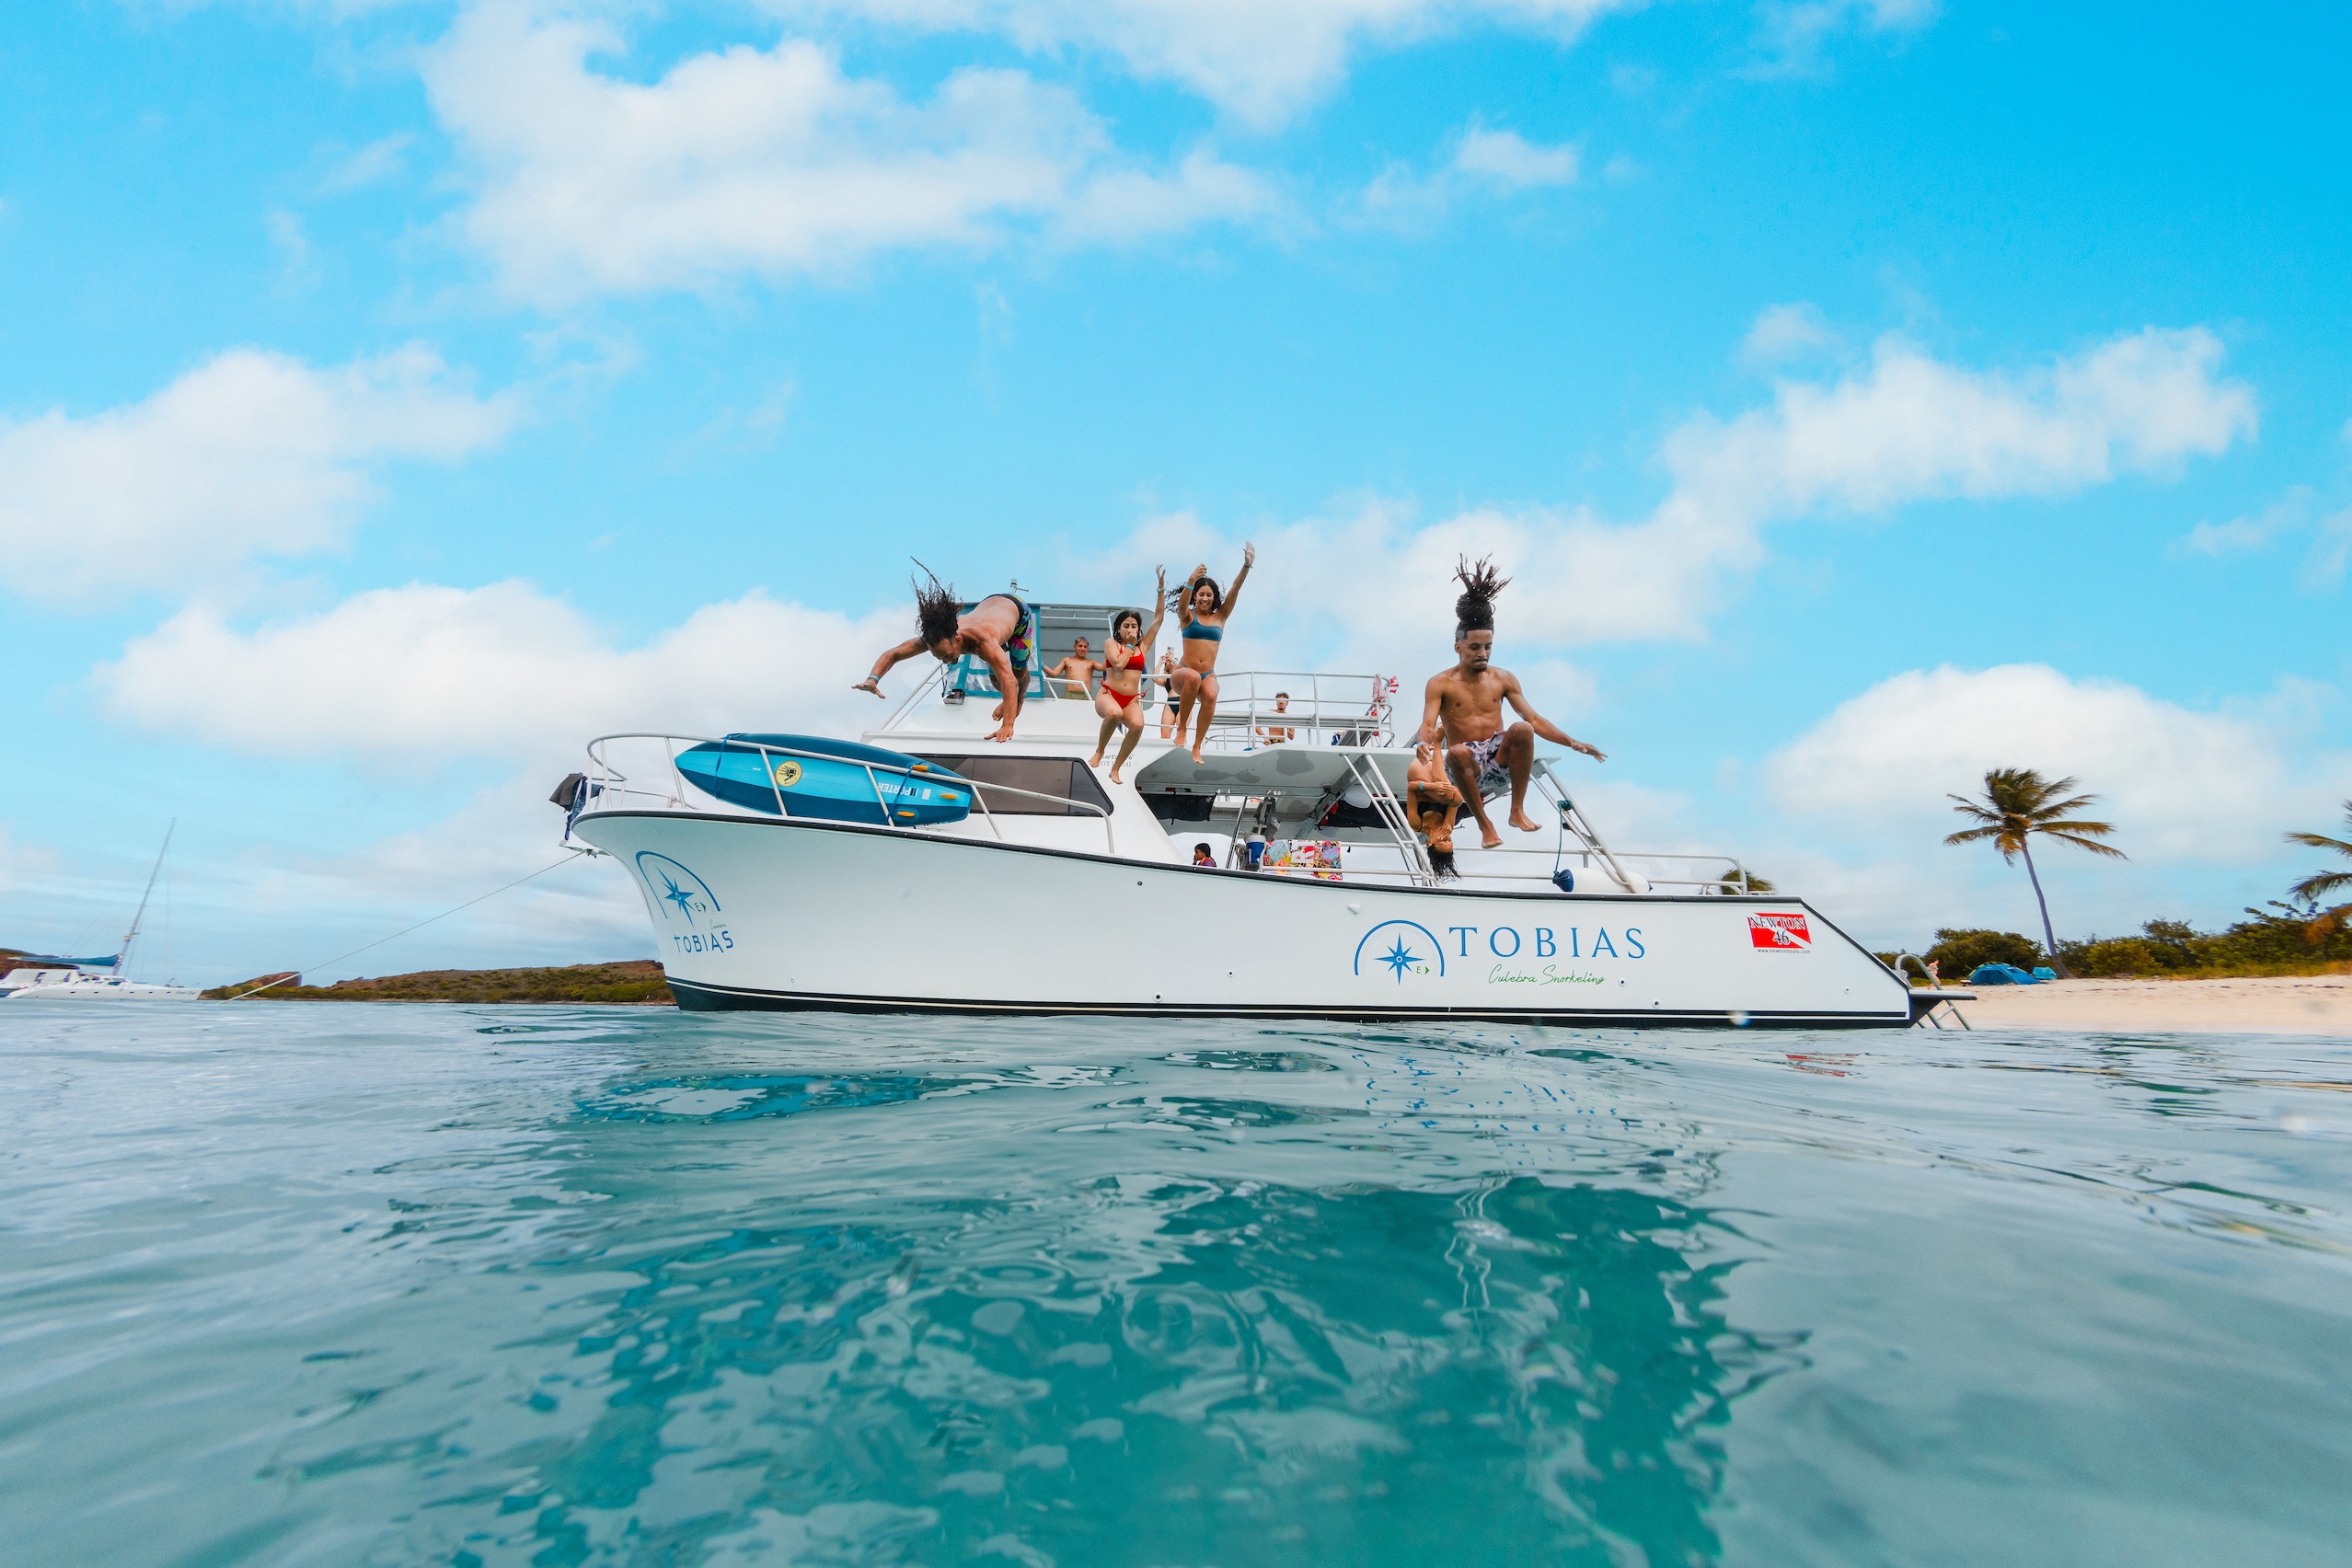 culebra island boat tour